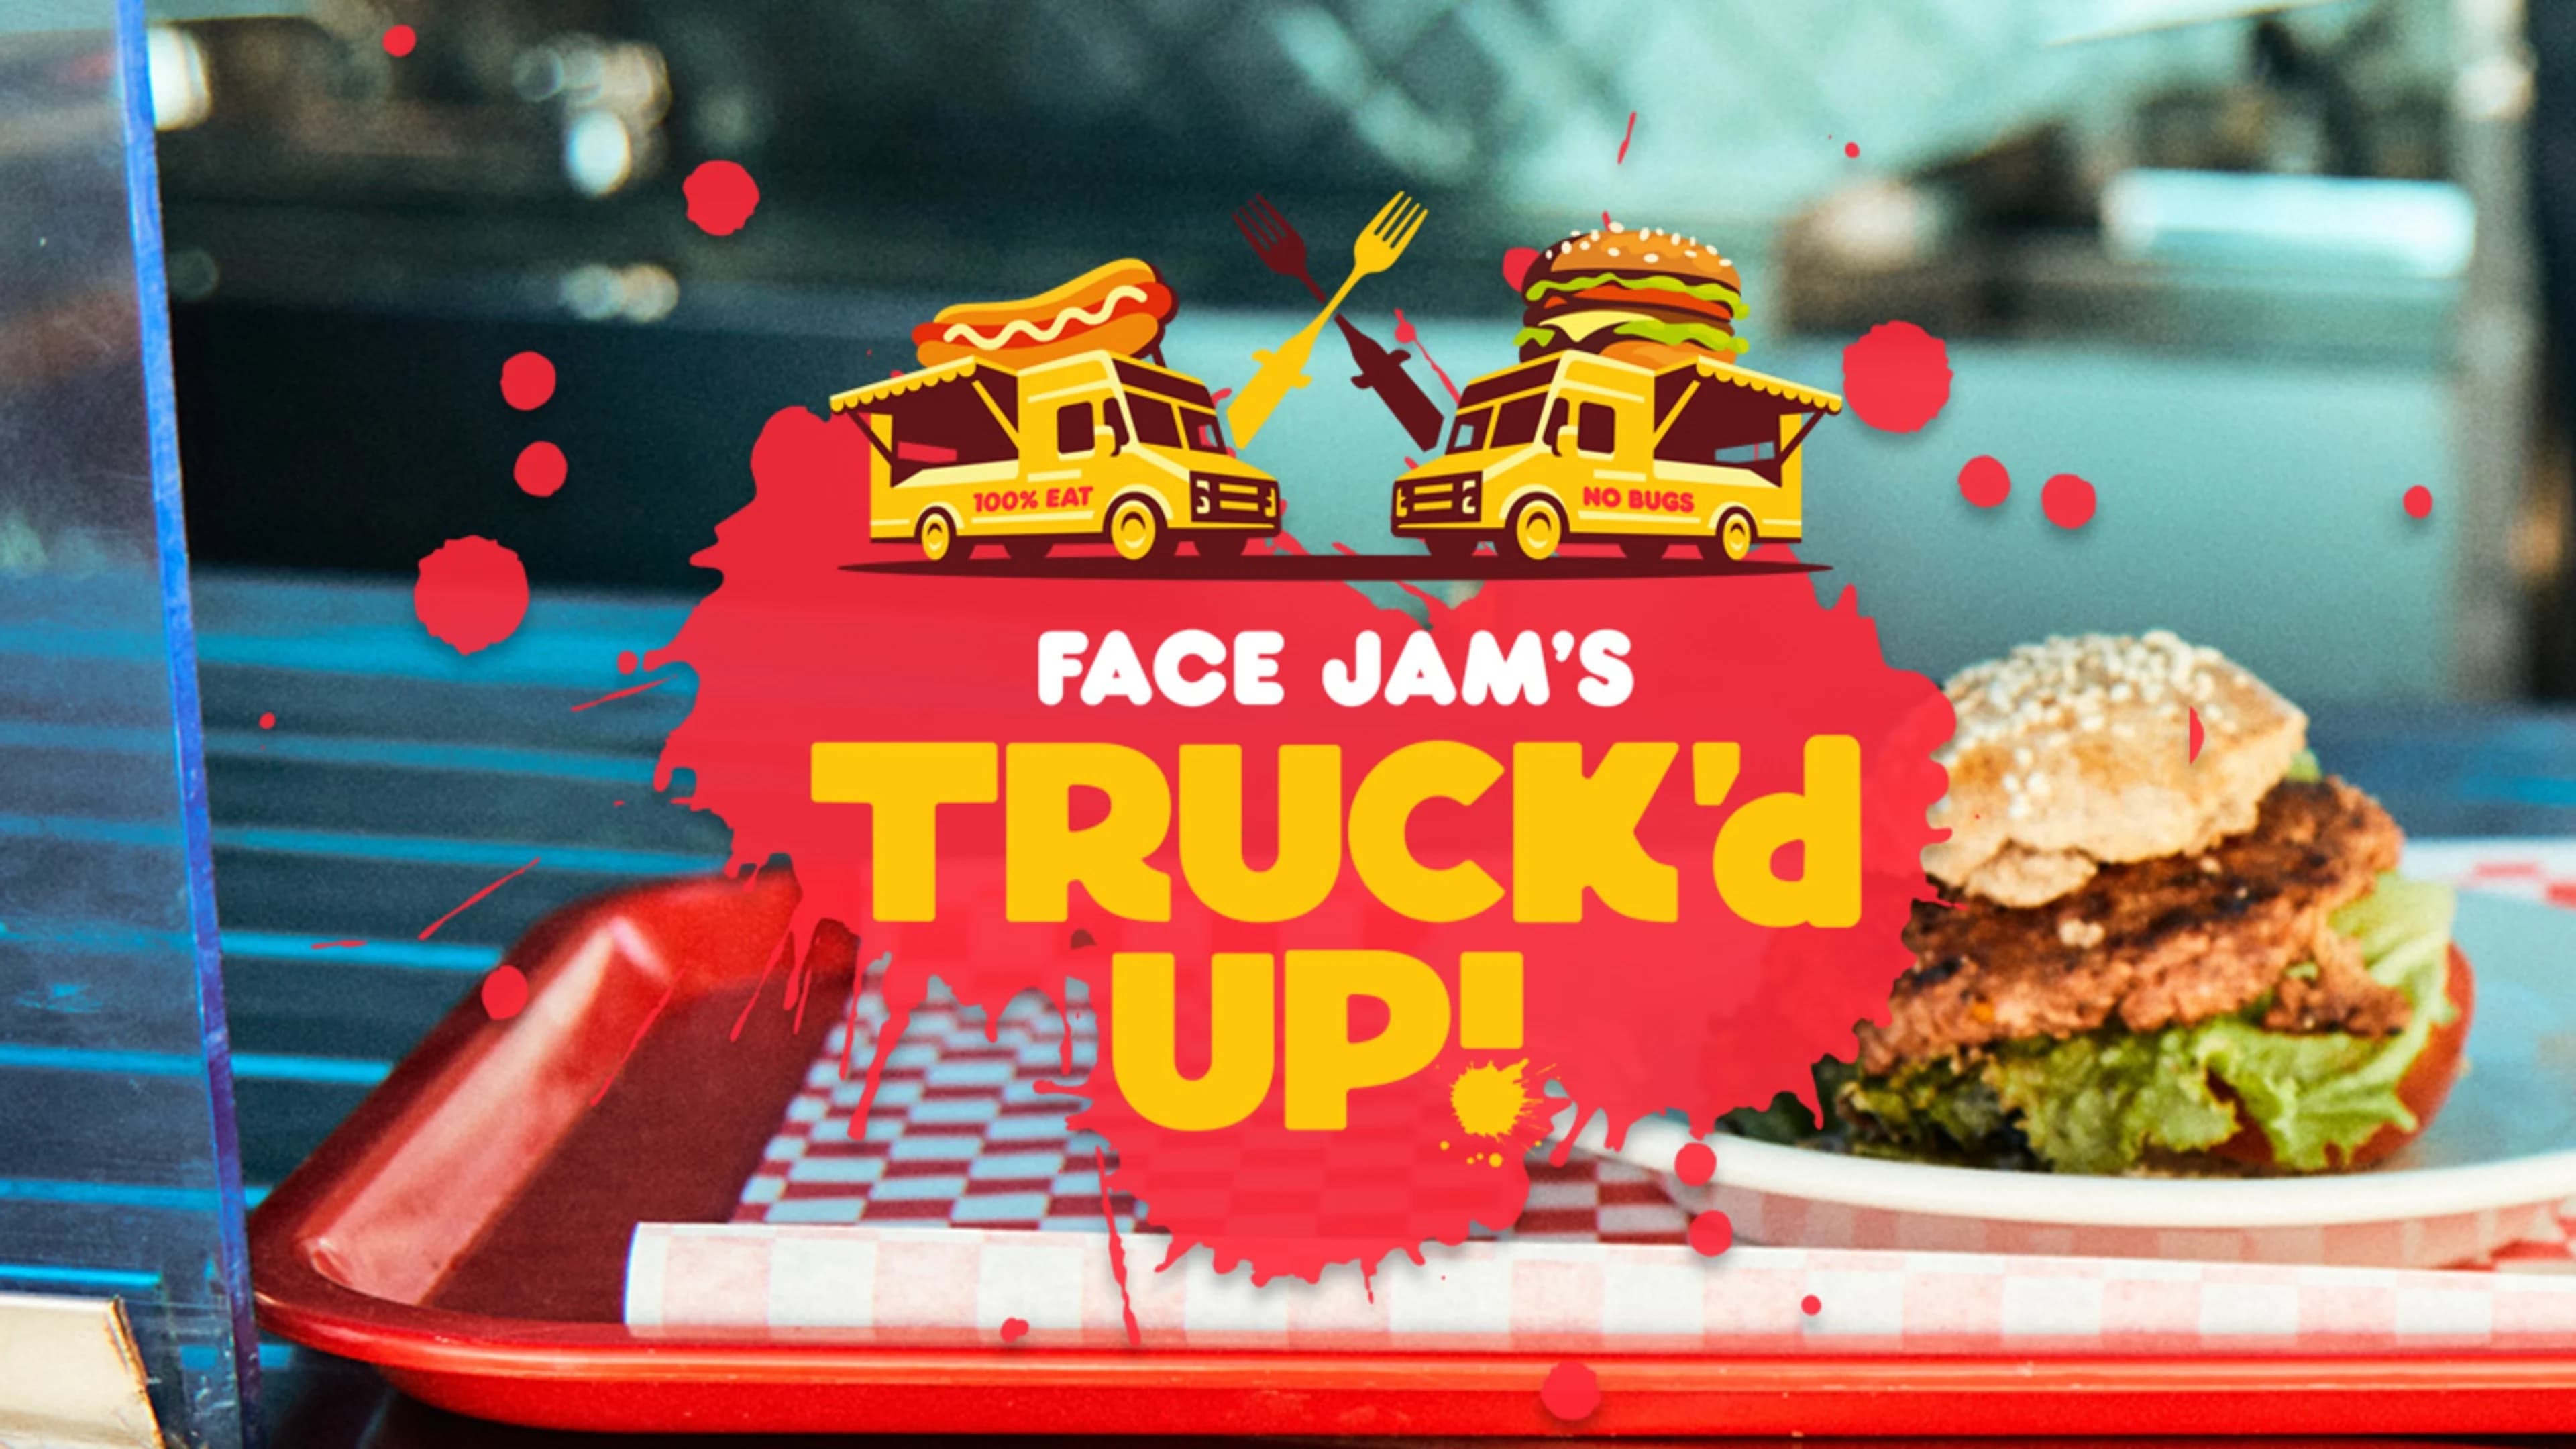 Face Jam's Truck'd Up!